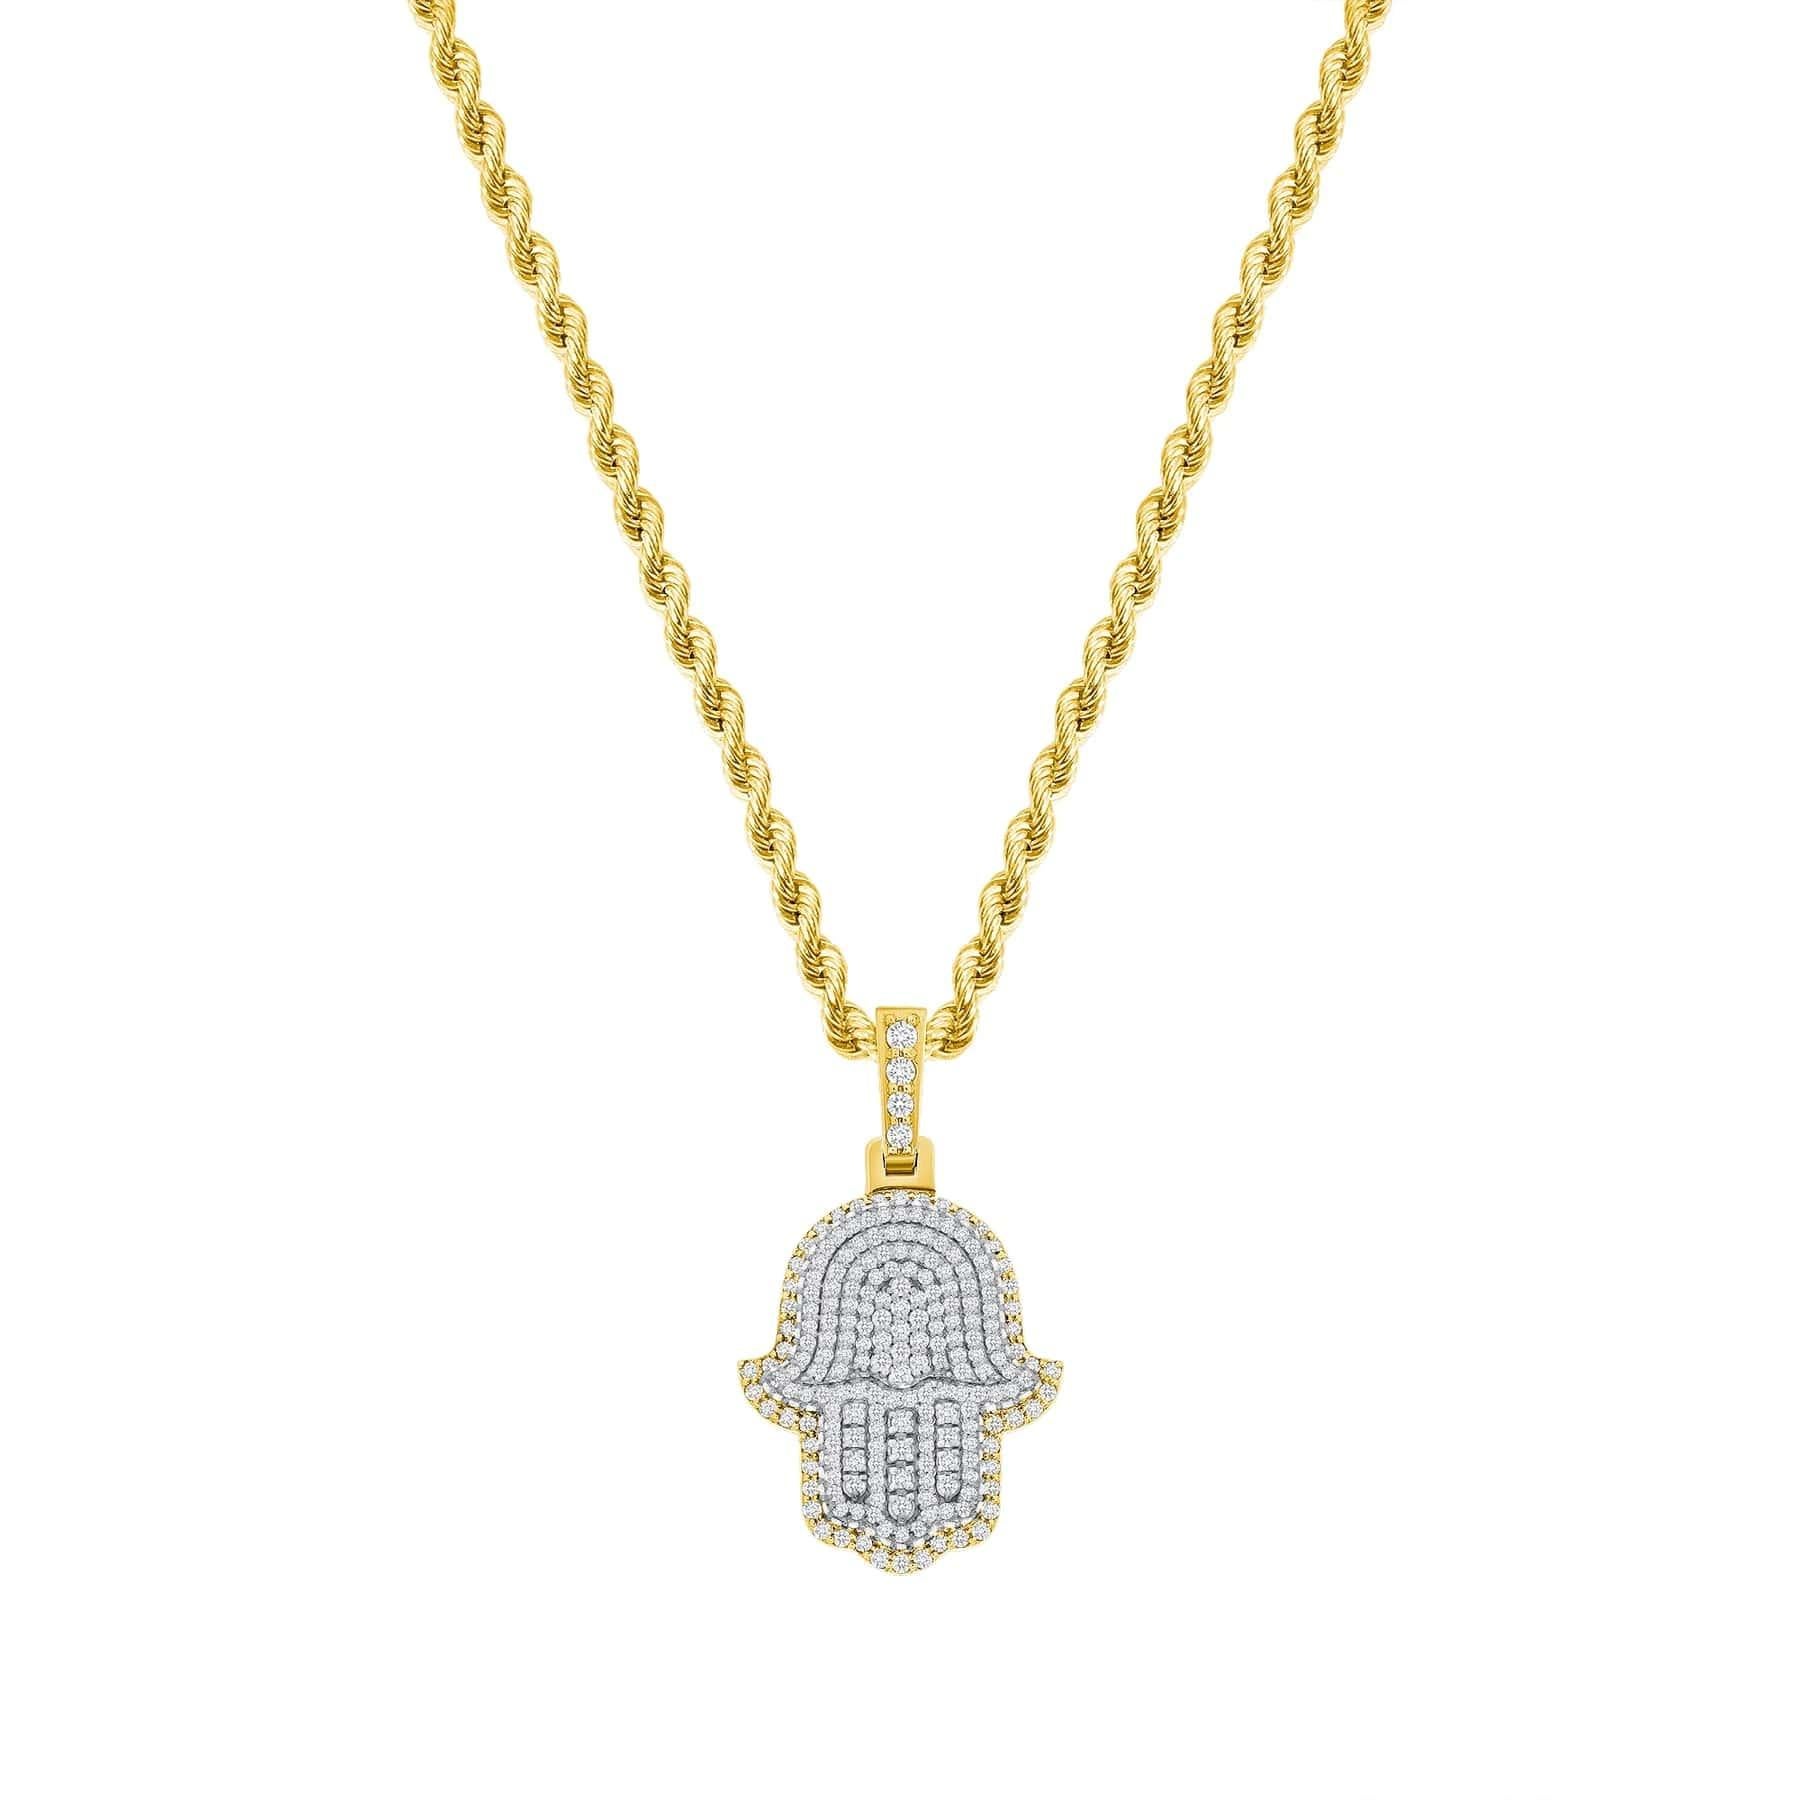 Zara's Hamsa-Halskette mit Diamanten